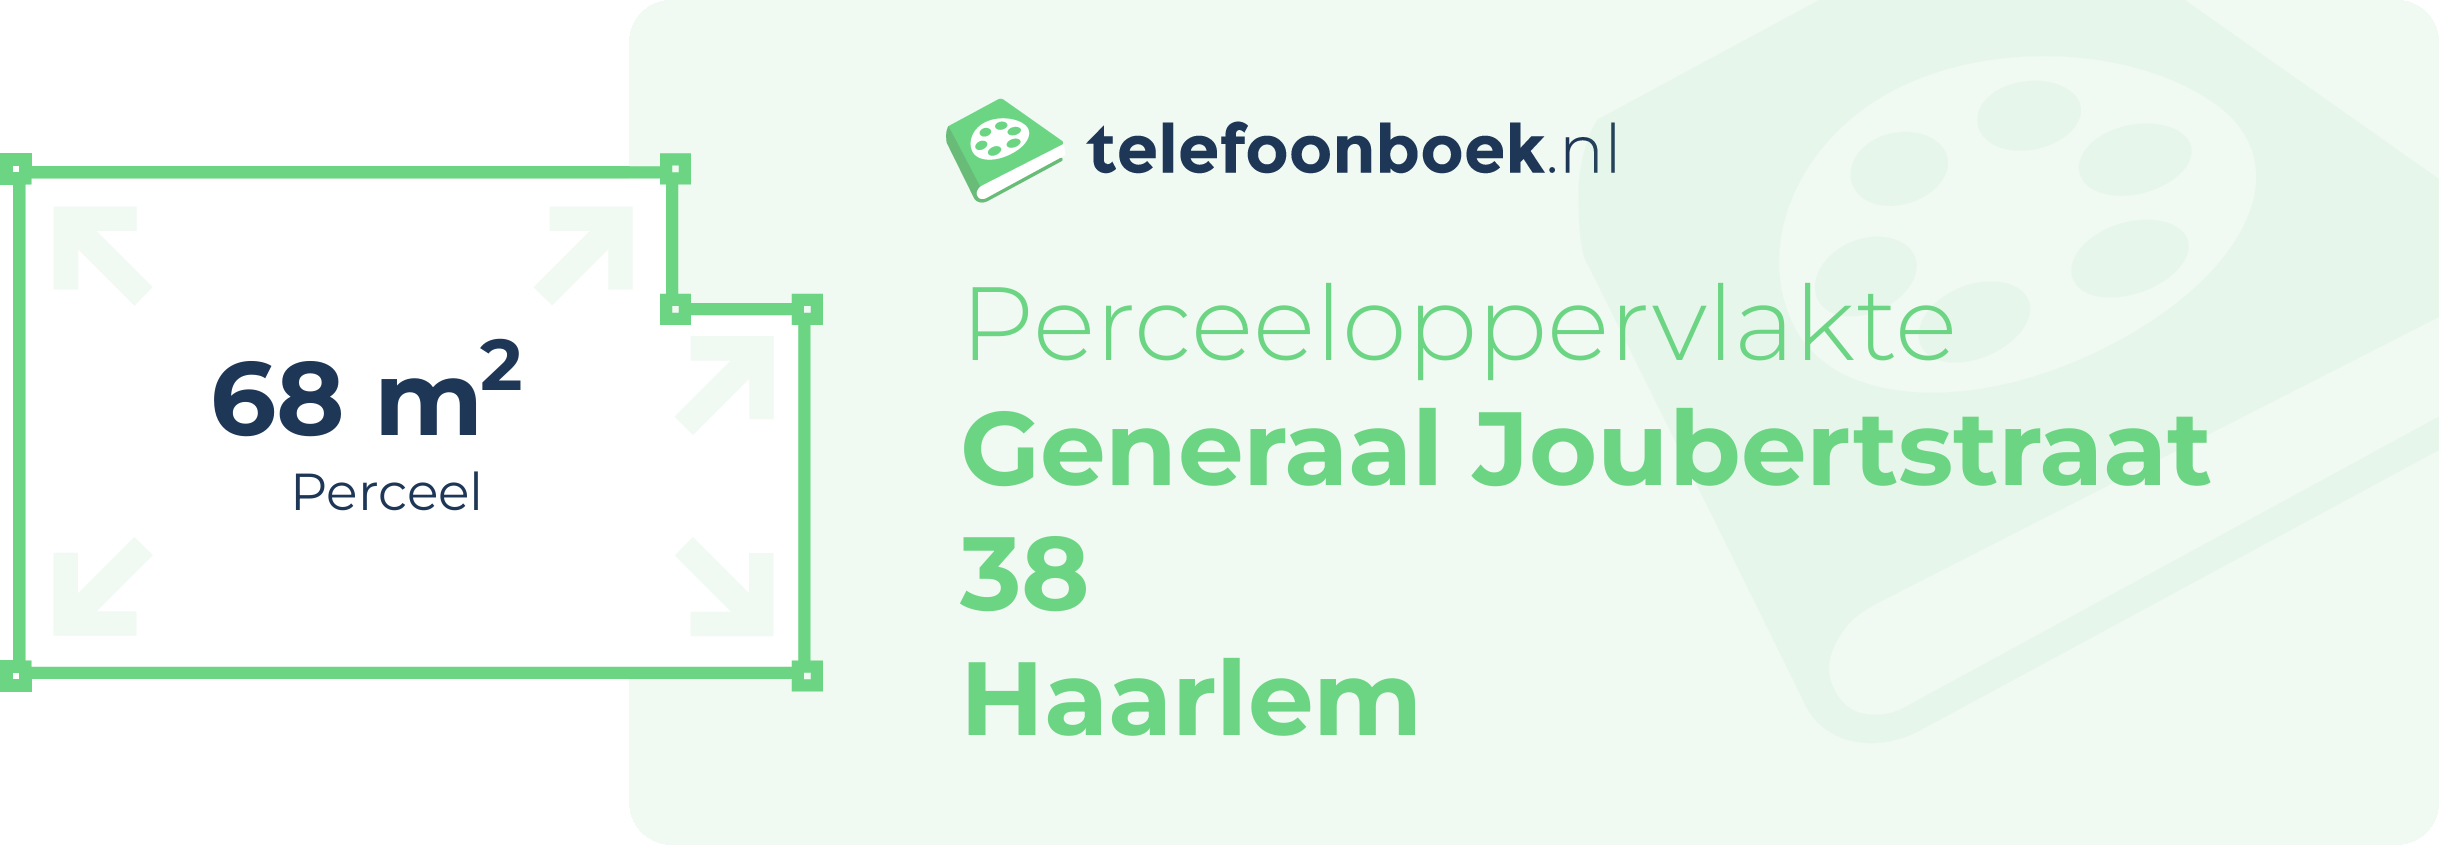 Perceeloppervlakte Generaal Joubertstraat 38 Haarlem